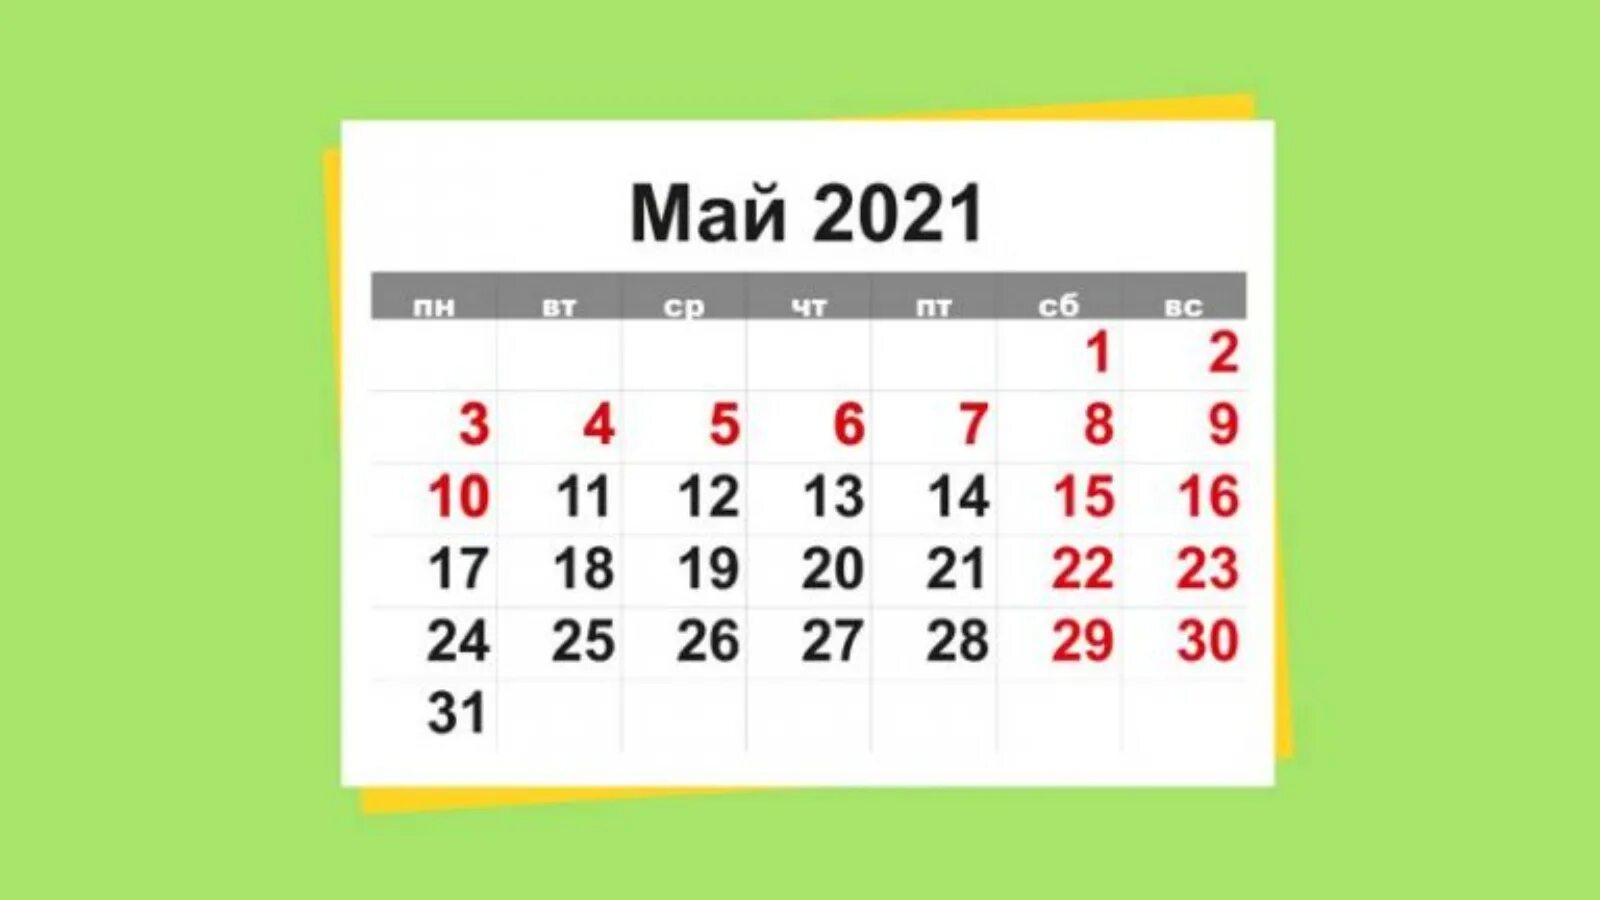 3 05 2021. Майские выходные. Майские праздники 2021. Майские праздники в 2021 году. Выходные на майские праздники 2021.